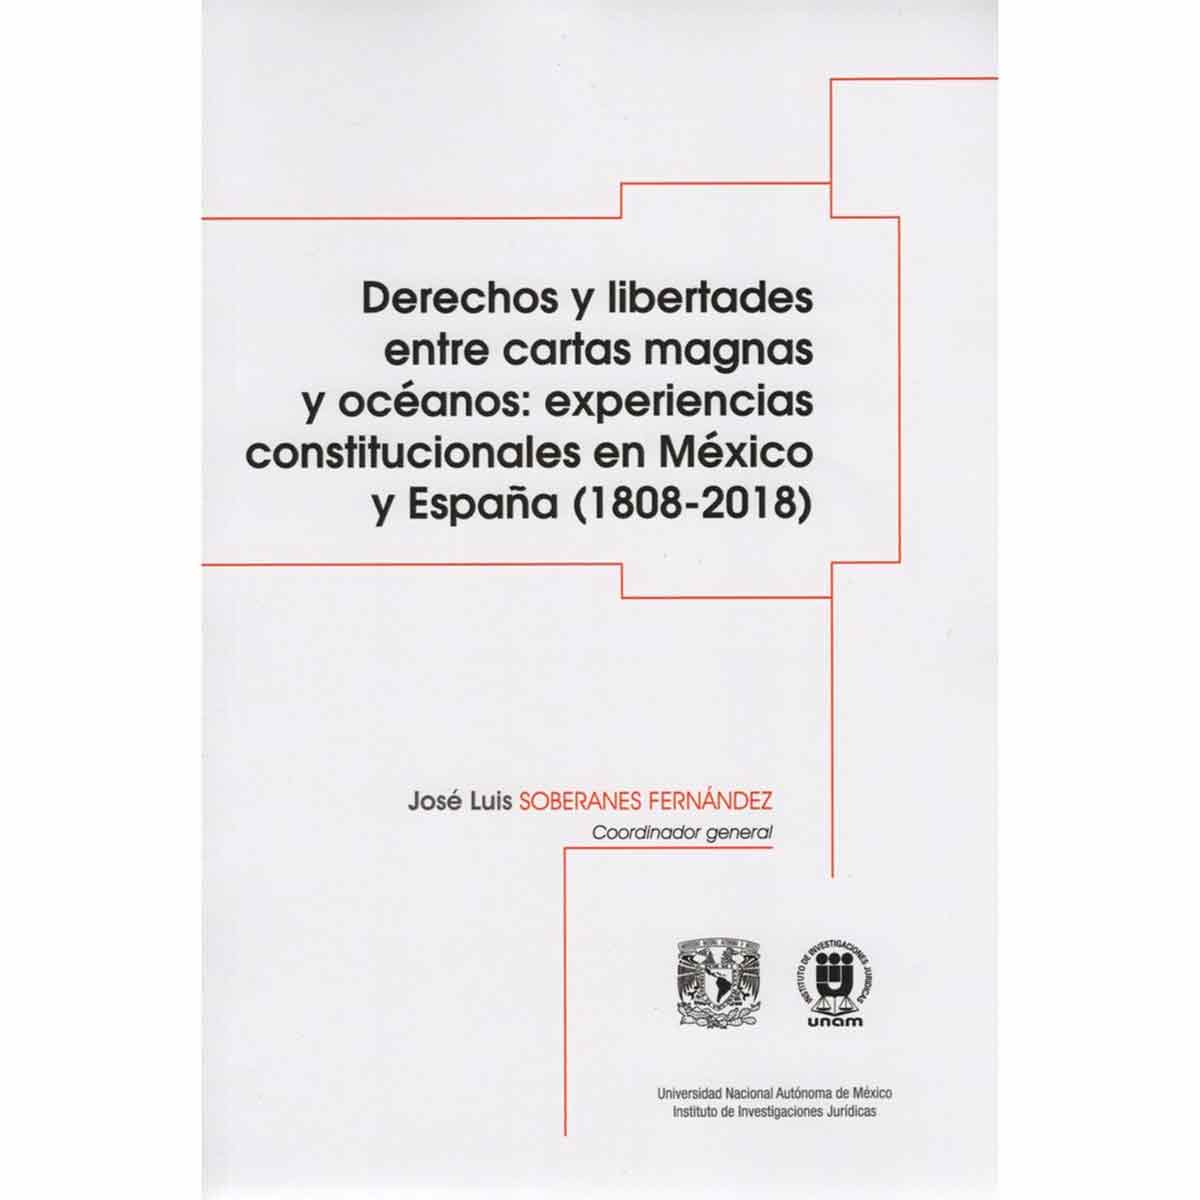 DERECHOS Y LIBERTADES ENTRE CARTAS MAGNAS Y OCÉANOS: EXPERIENCIAS CONSTITUCIONALES EN MÉXICO Y ESPAÑA (1808-2018)